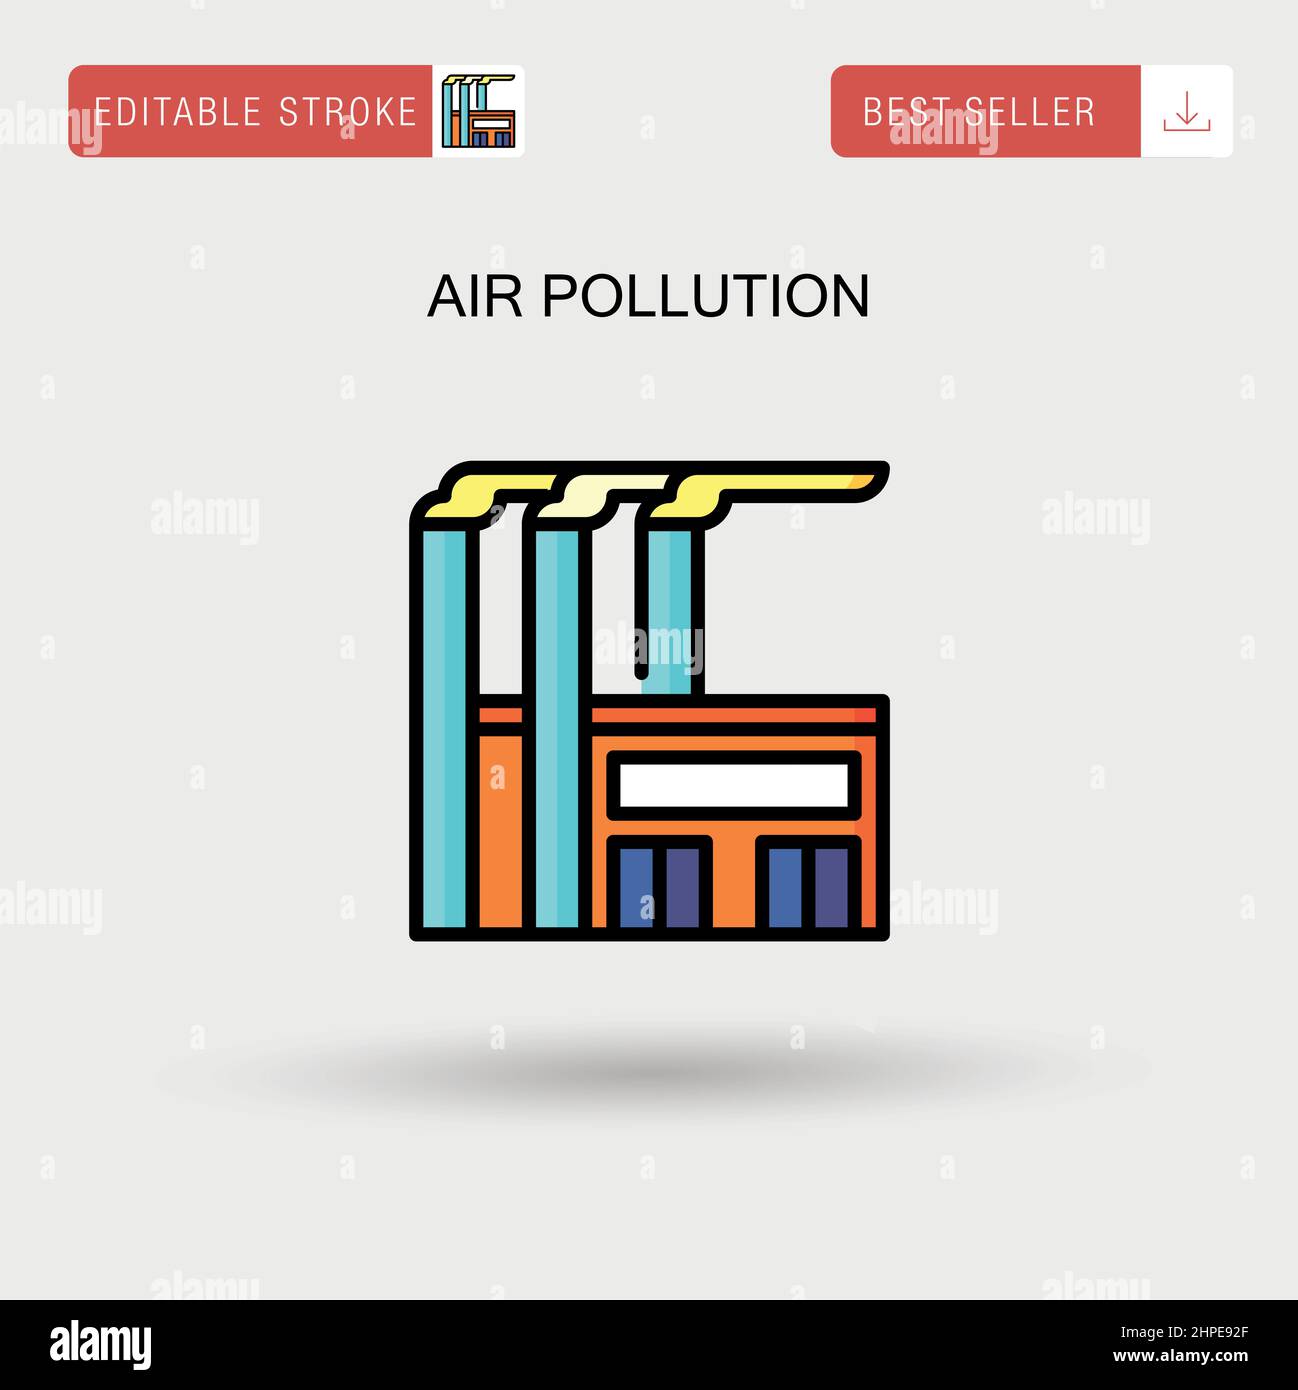 Einfaches Vektorsymbol für Luftverschmutzung. Stock Vektor